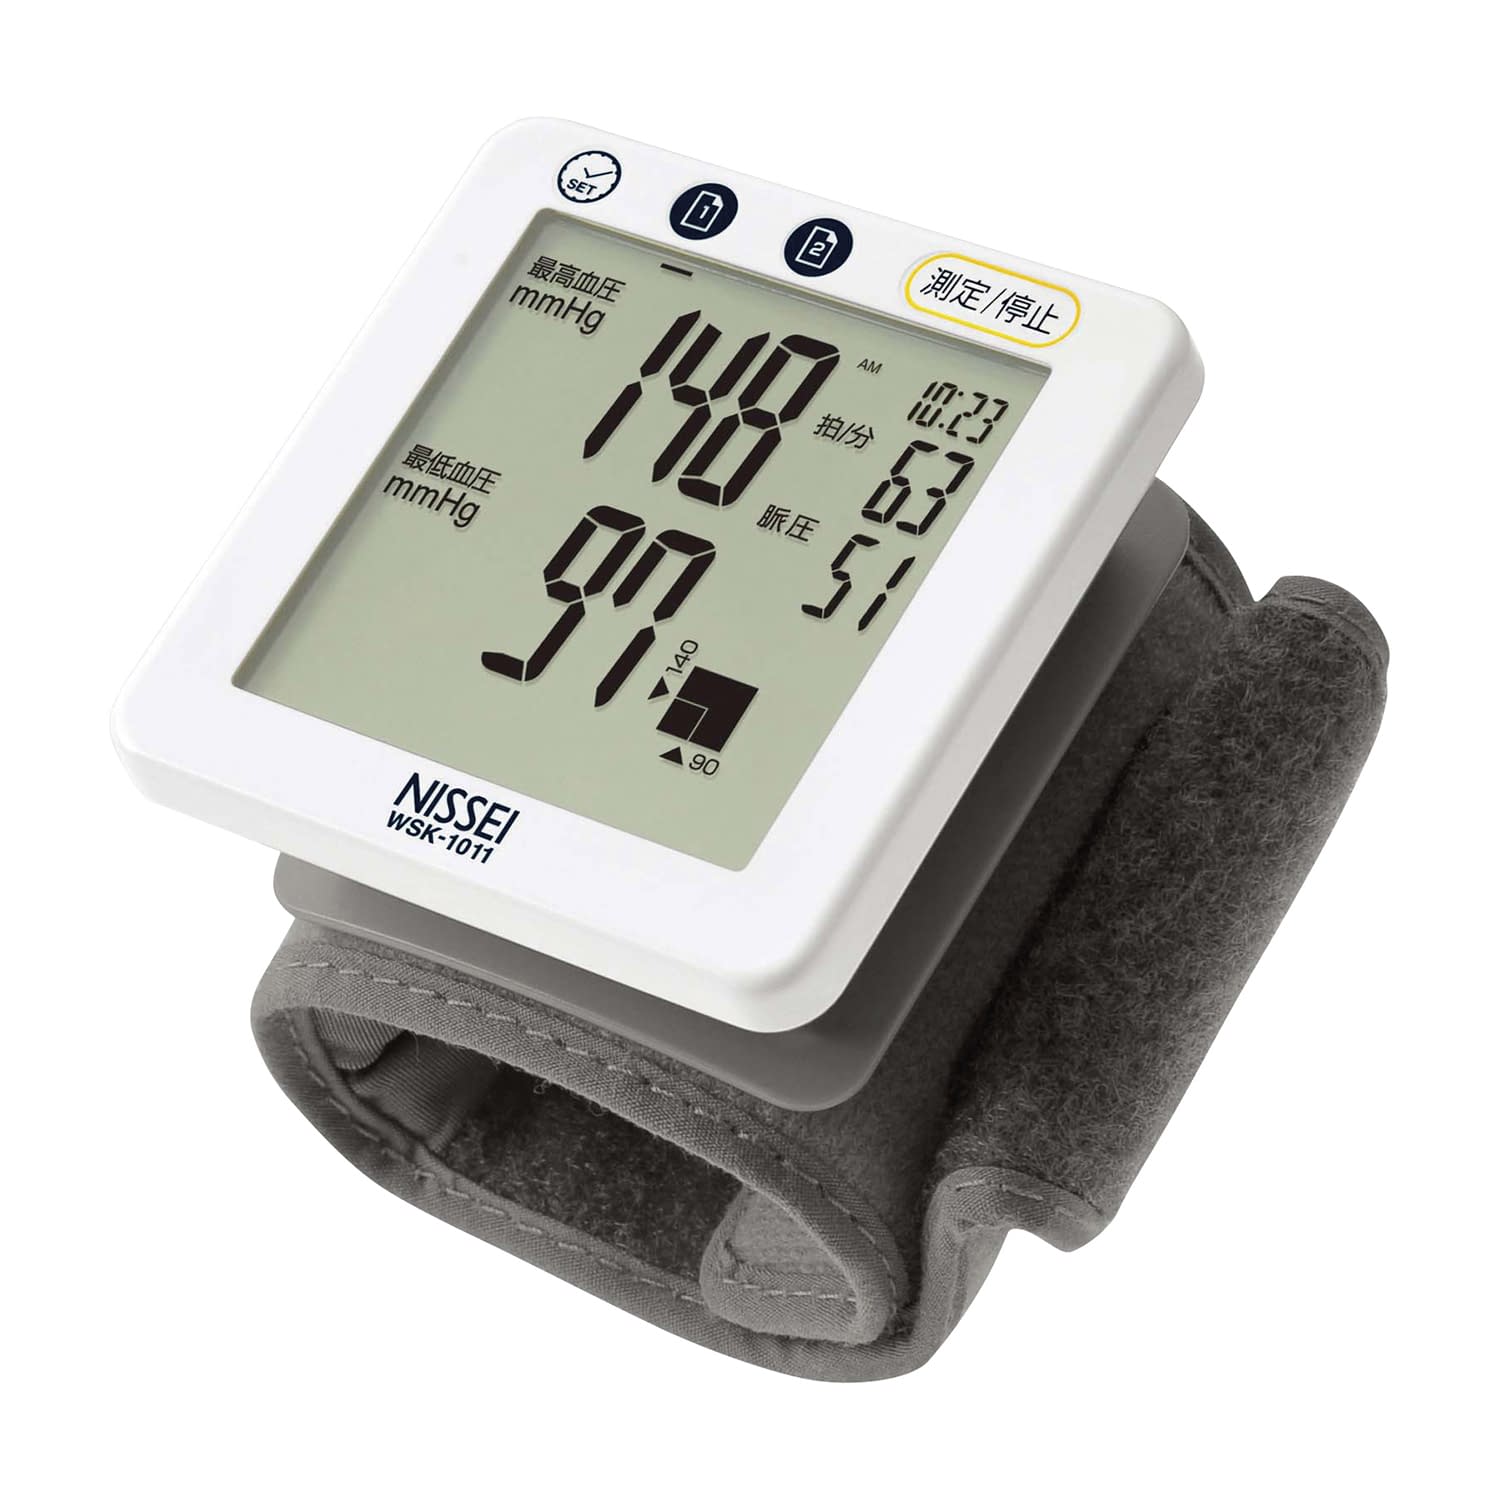 (24-2303-00)デジタル血圧計（手首式） WSK-1011 ﾃﾞｼﾞﾀﾙｹﾂｱﾂｹｲ(ﾃｸﾋﾞｼｷ)(日本精密測器)【1台単位】【2019年カタログ商品】